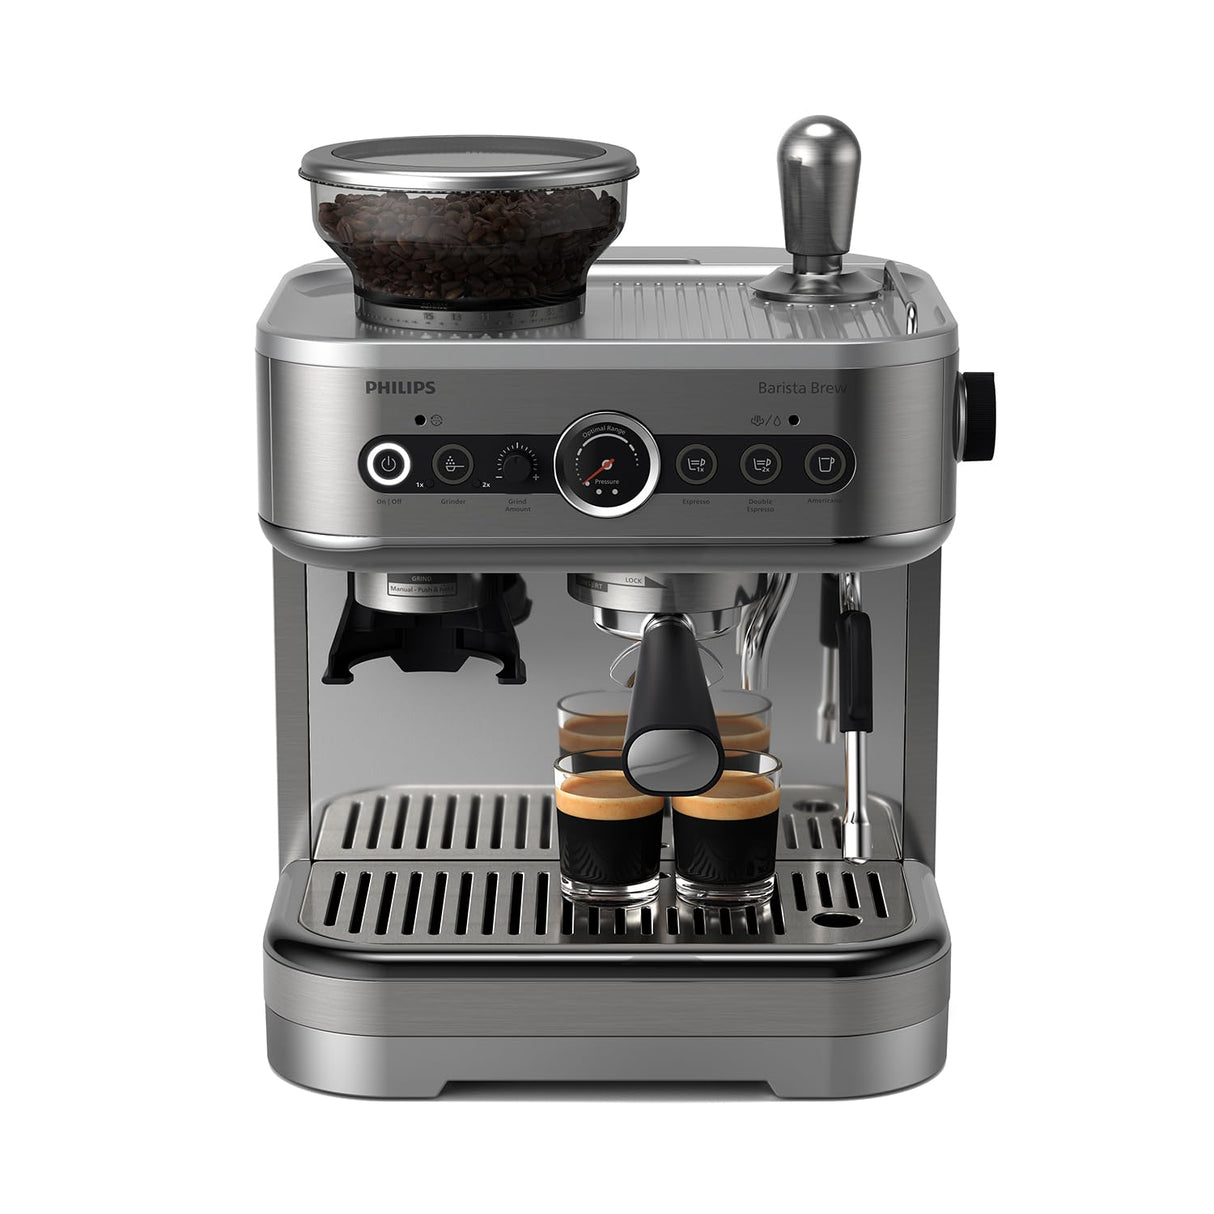 PHILIPS Barista Brew Semi Automatic Espresso Machine - Single & Double Espresso + Americano Button, 250g Bean Container, Intuitive Guidance, Calibrated Tamping, Metal Silver (PSA3218/01)